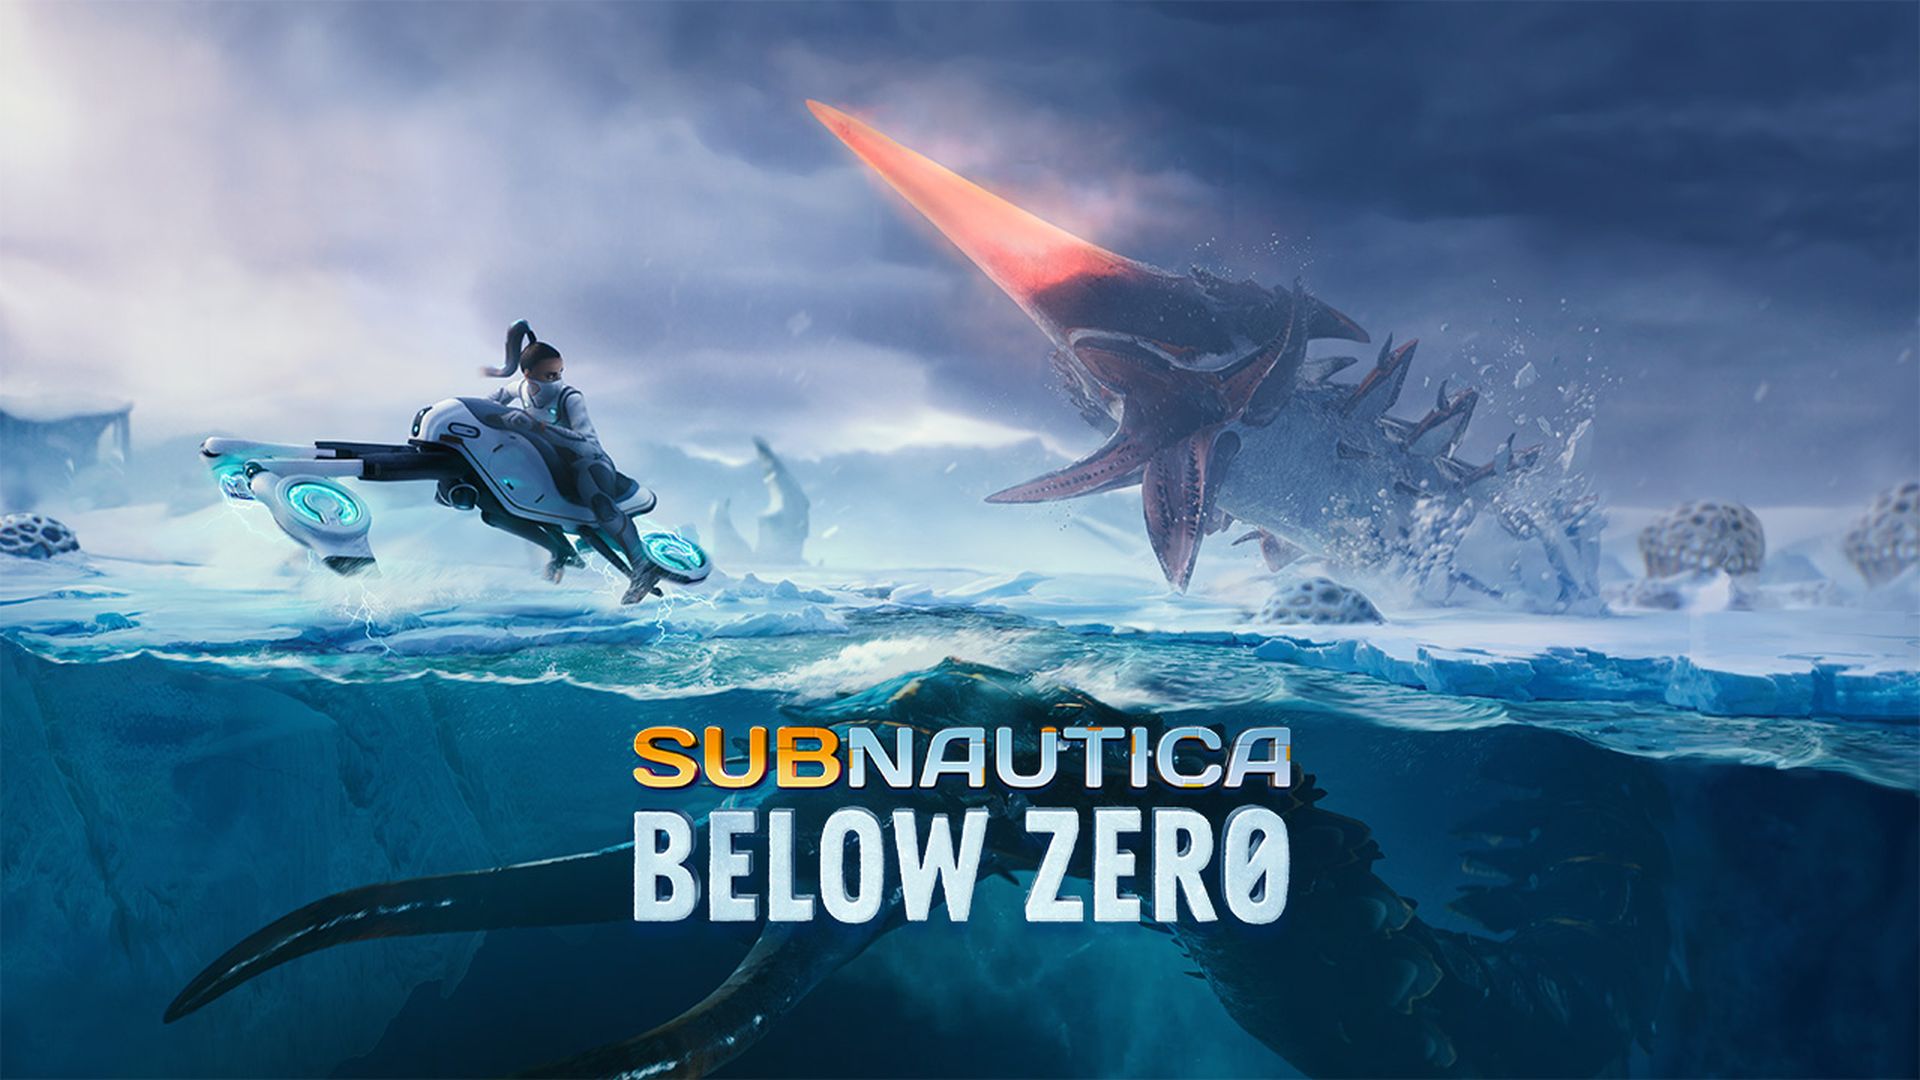 subnautica below zero ps4 free